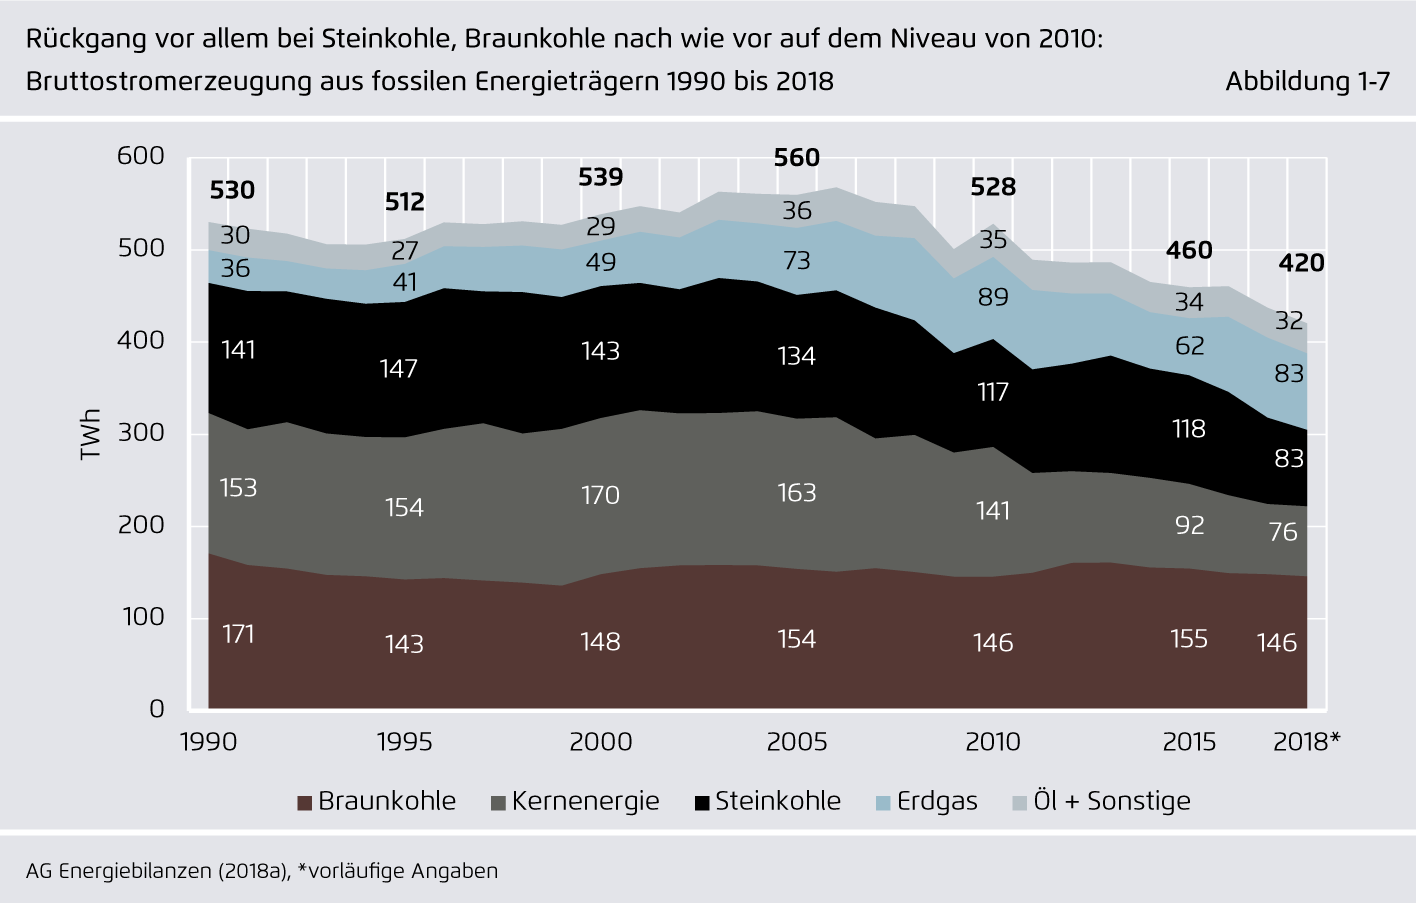 Preview for Rückgang vor allem bei Steinkohle, Braunkohle nach wie vor auf dem Niveau von 2010: Bruttostromerzeugung aus fossilen Energieträgern 1990 bis 2018